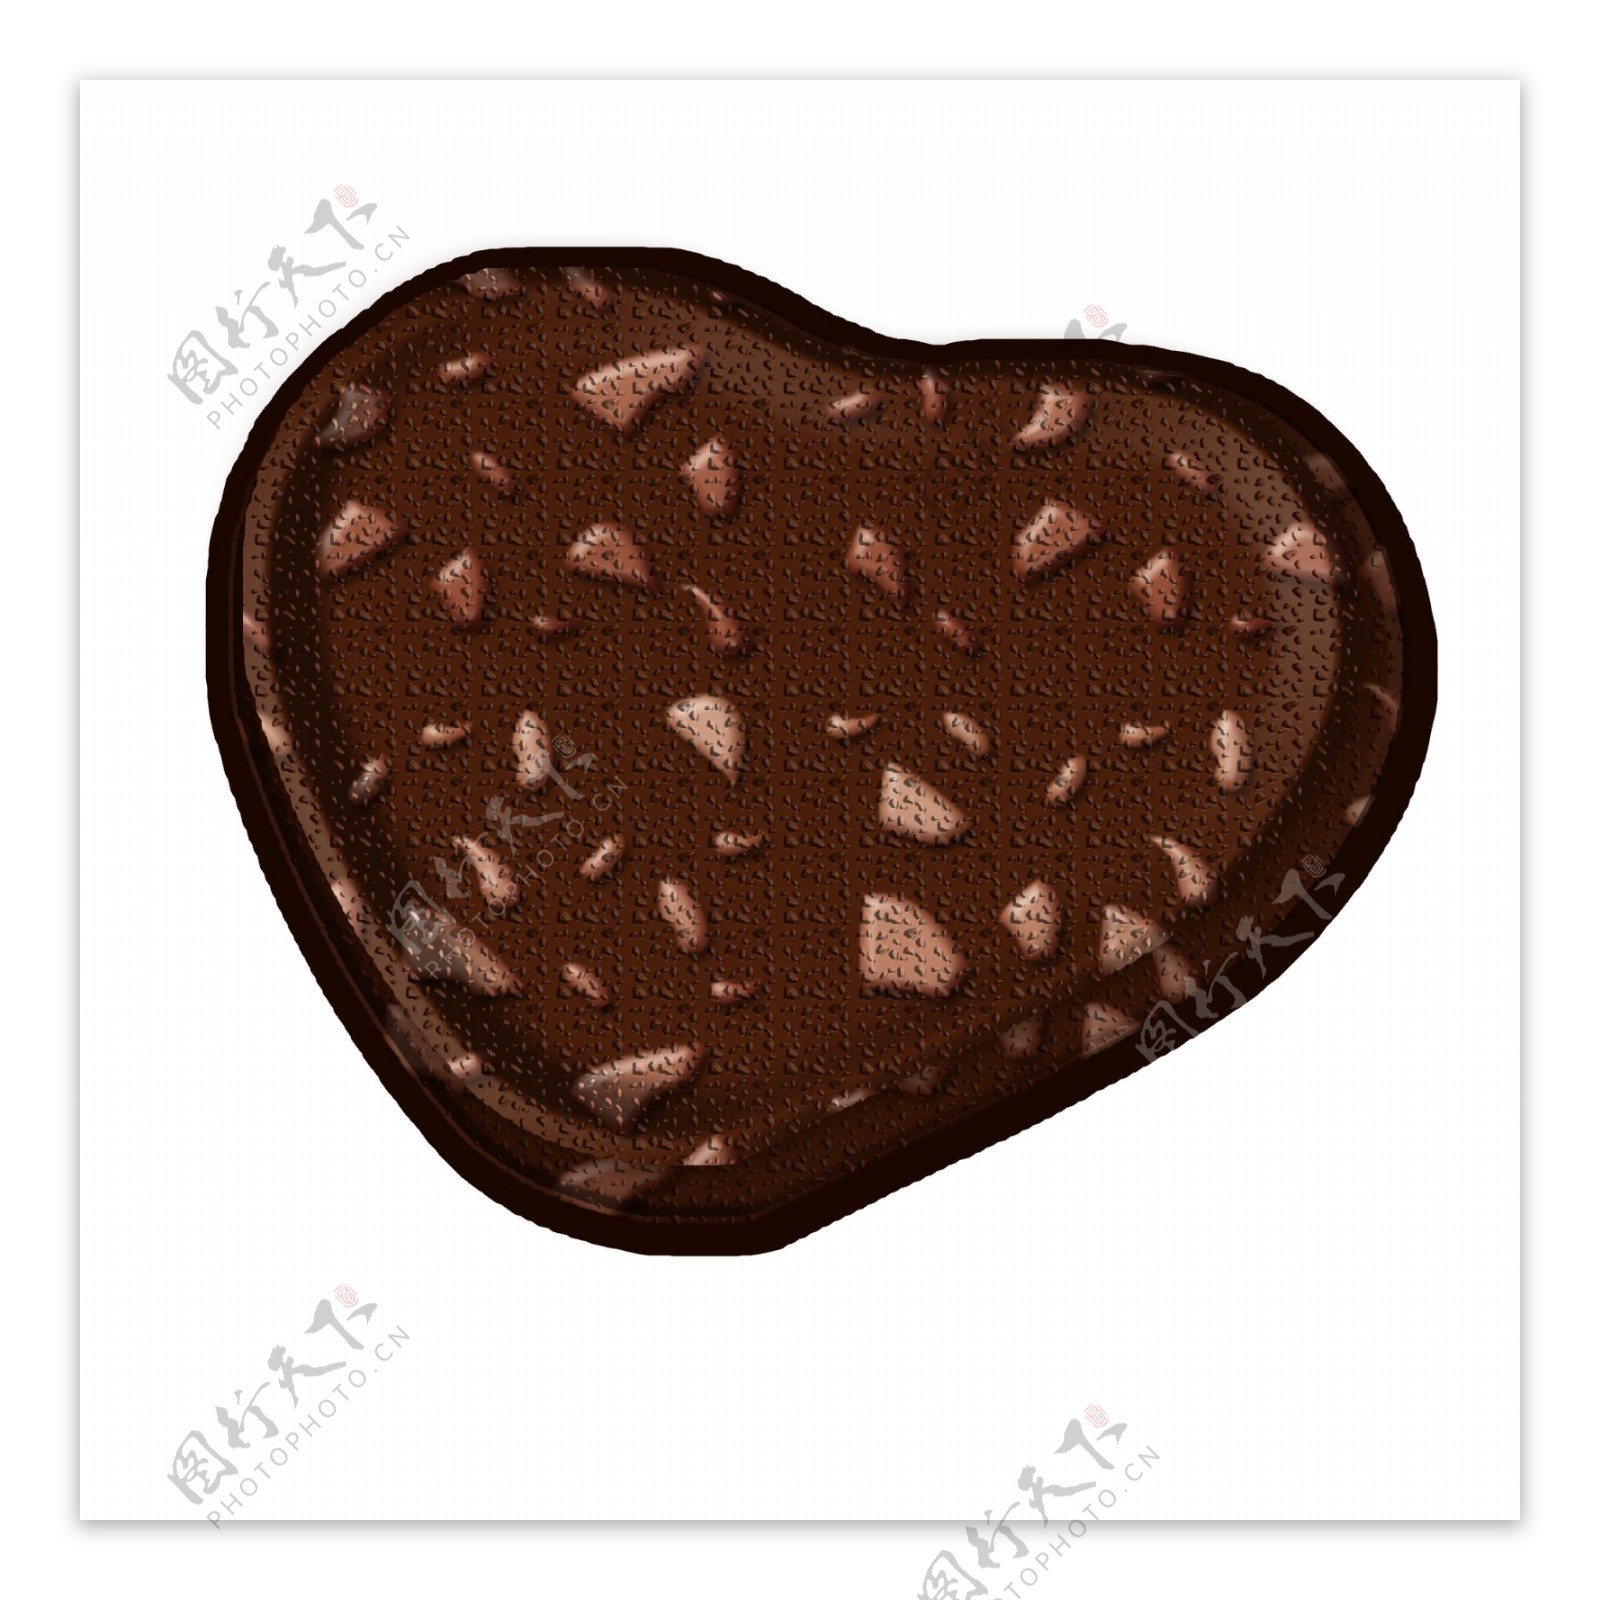 心形巧克力样式png素材